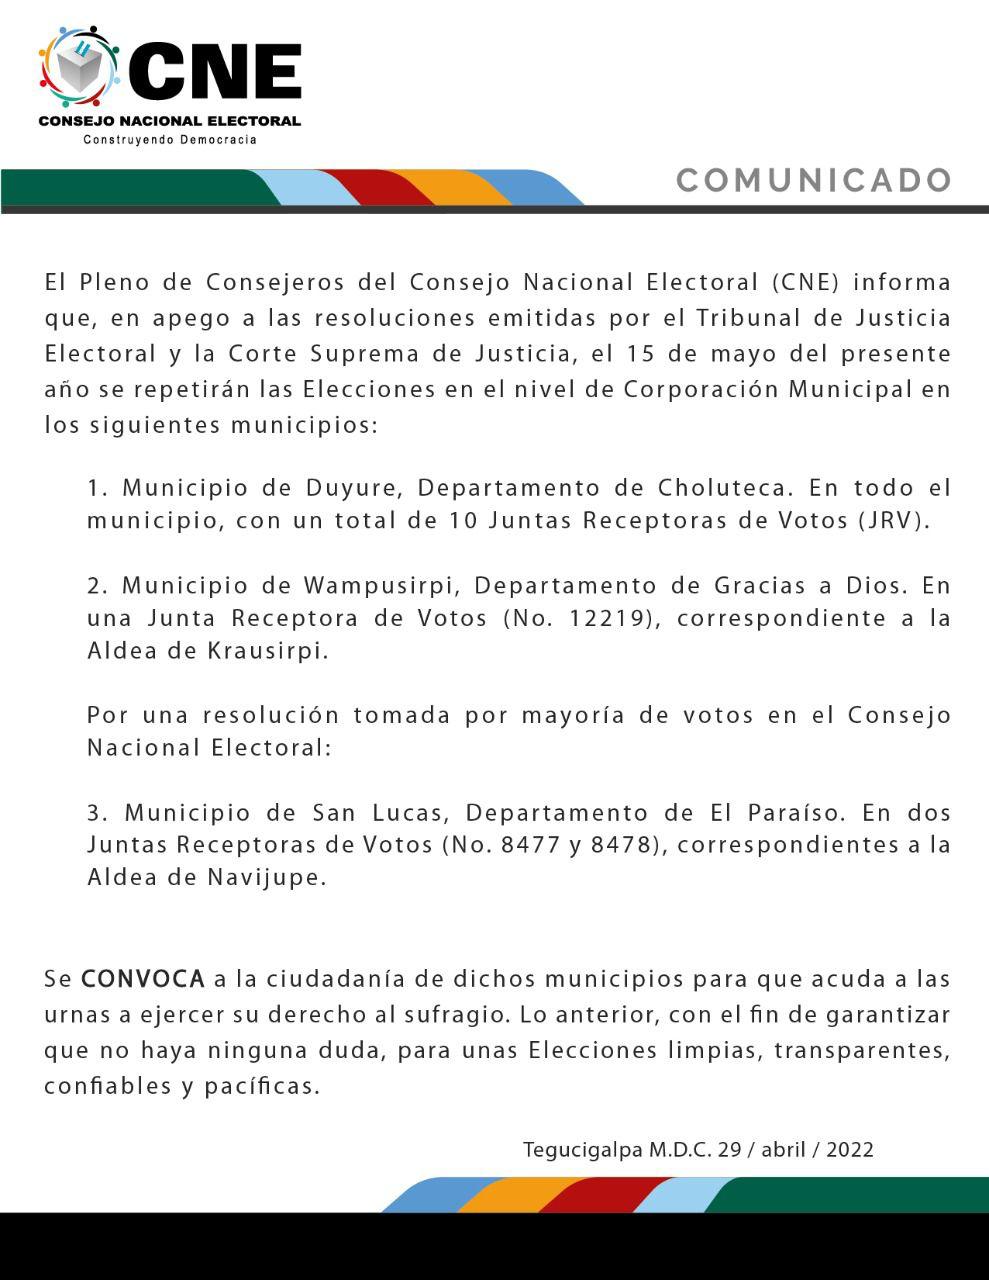 El CNE anunció la repetición de elecciones en 3 municipios. 